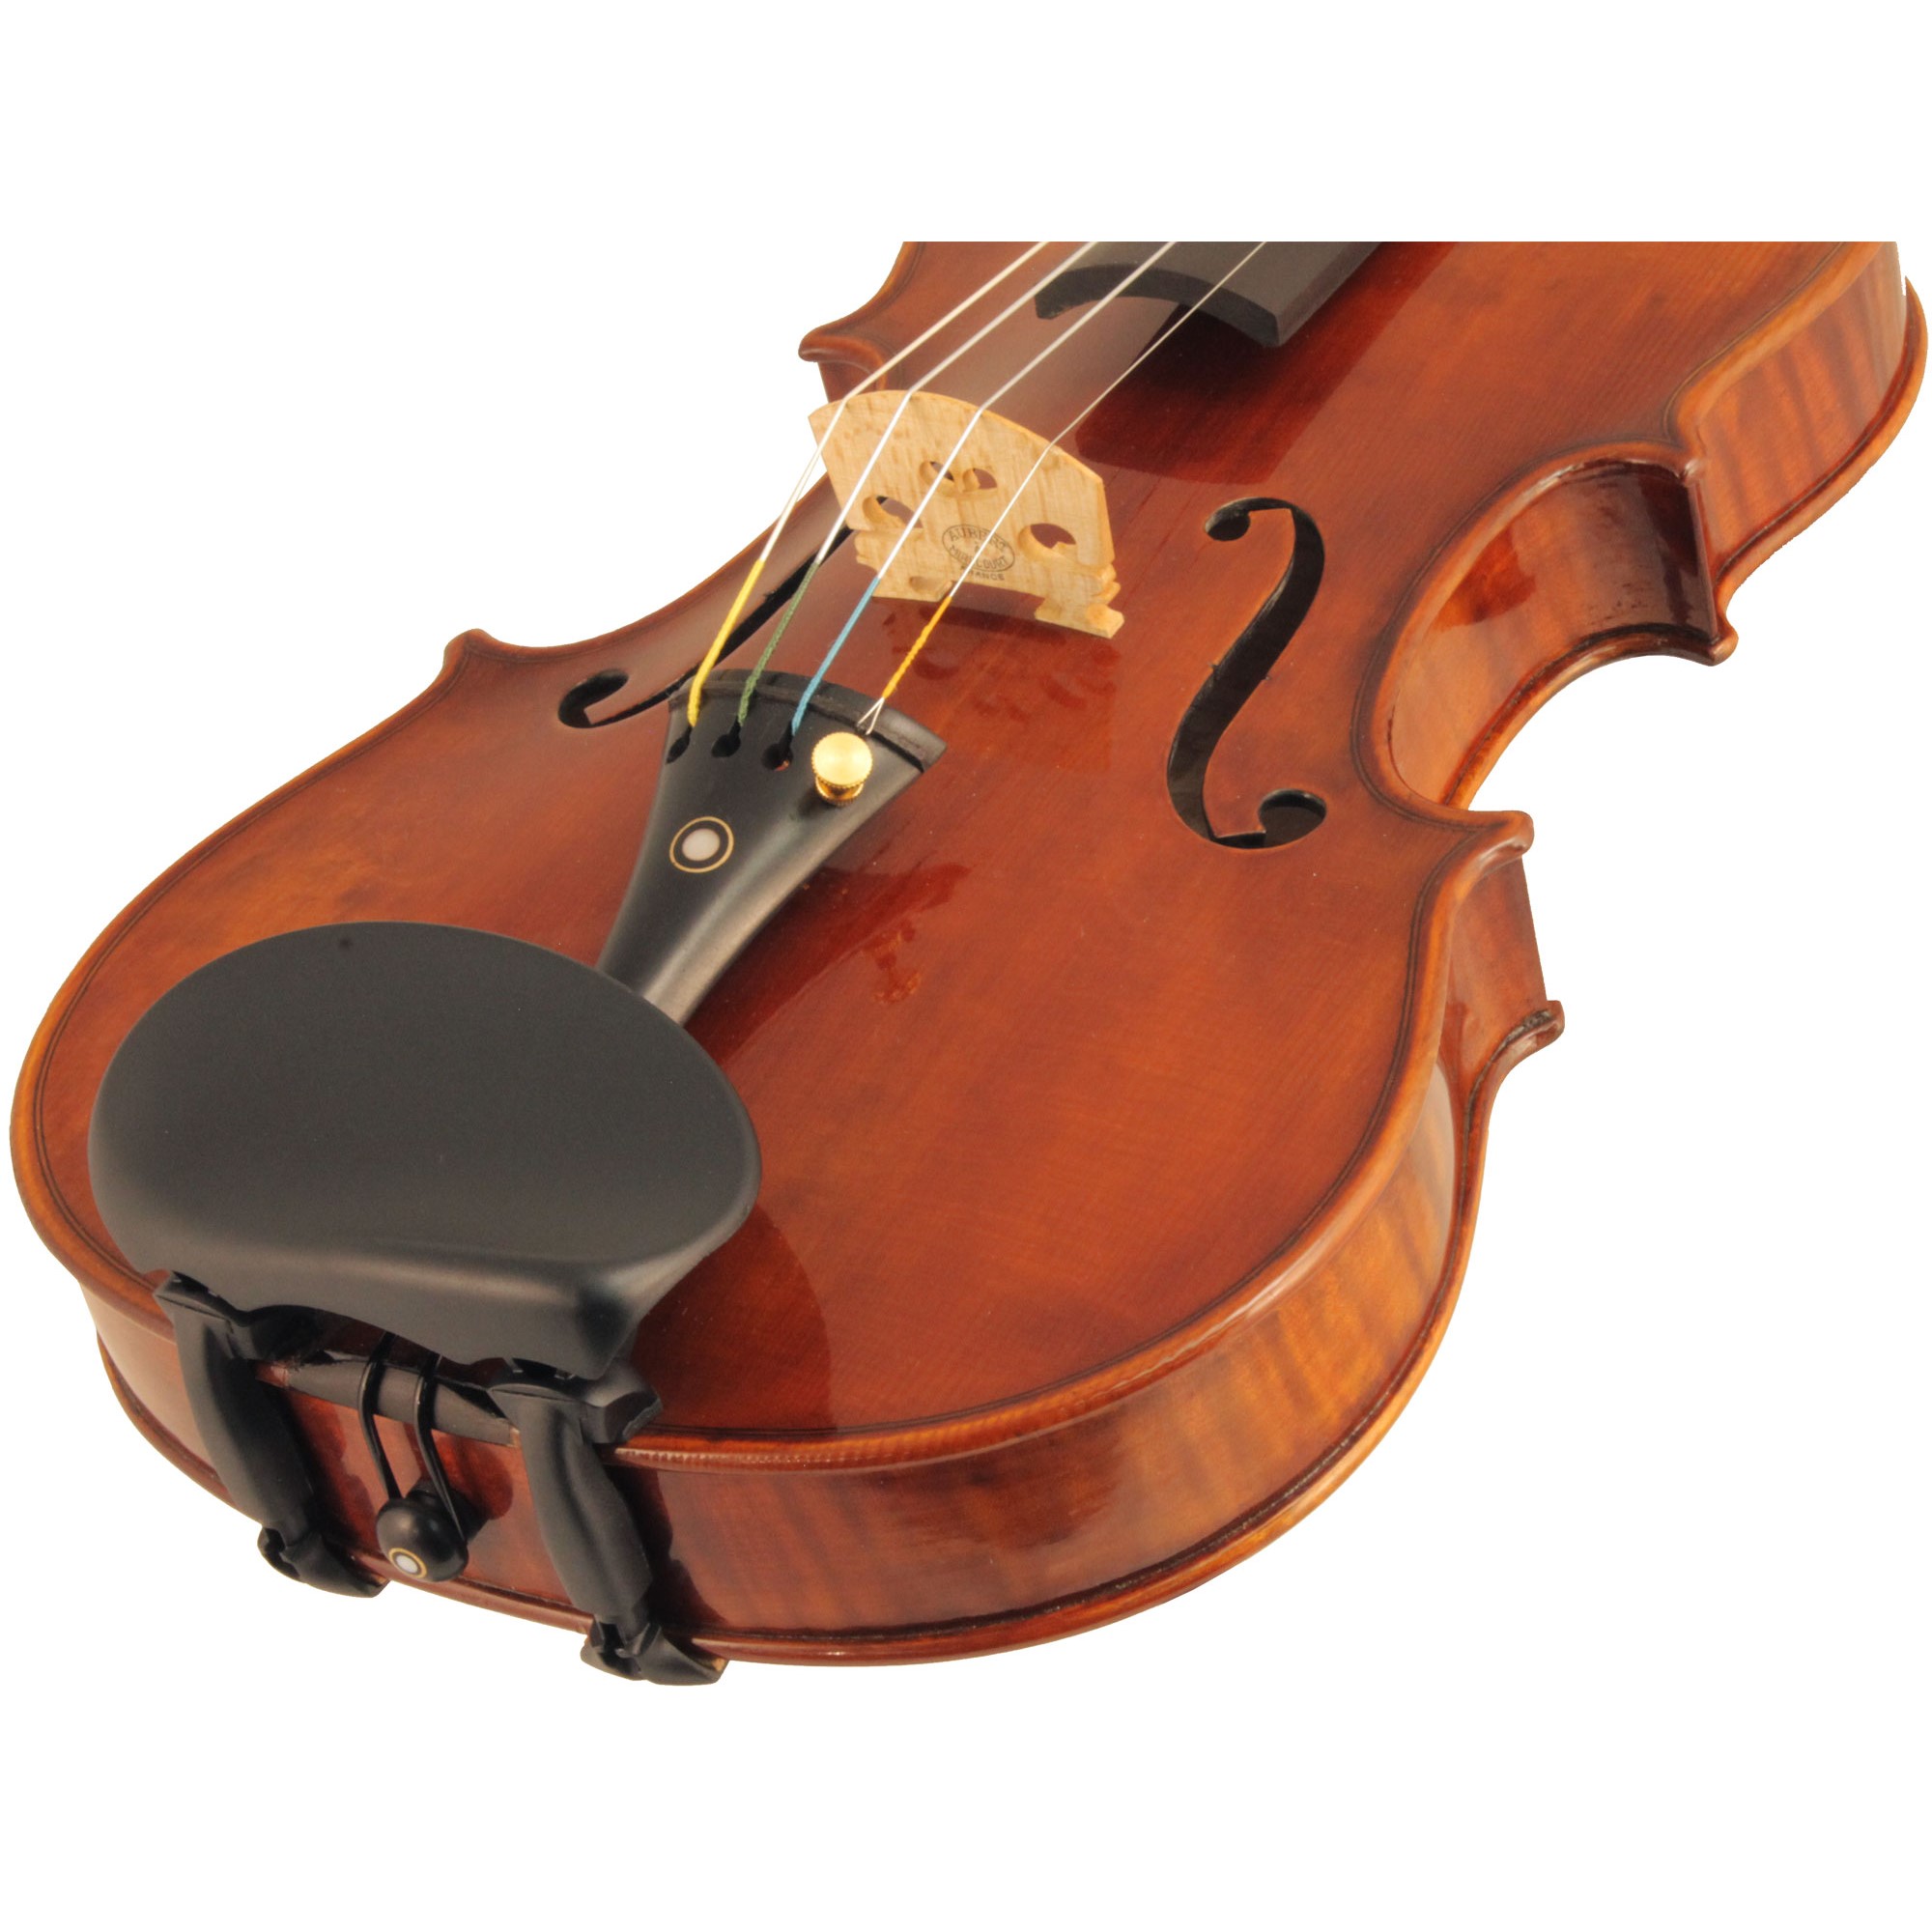 Wittner Kinnhalter Side- or Center-Mount Violin Chinrests in action